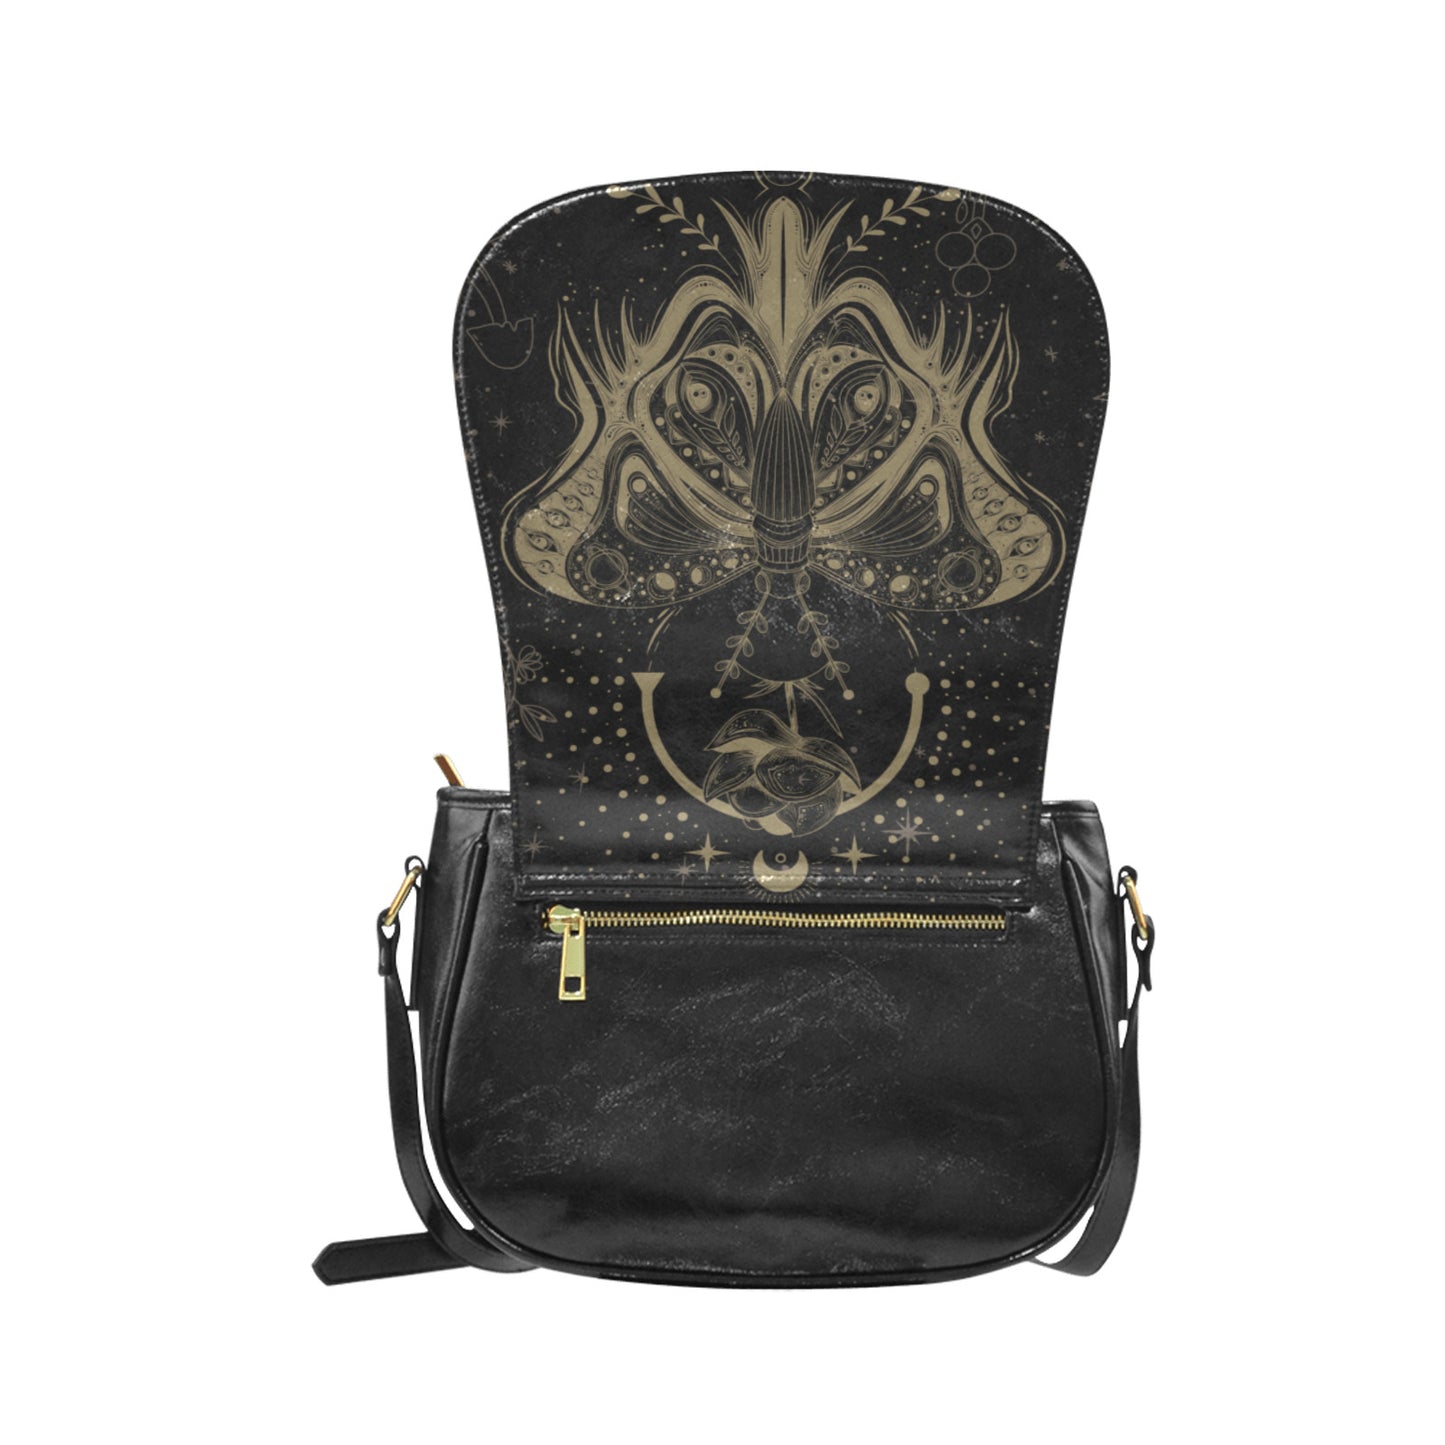 Lotus Moth Witch Vegan Leather Cottagecore Saddle Bag